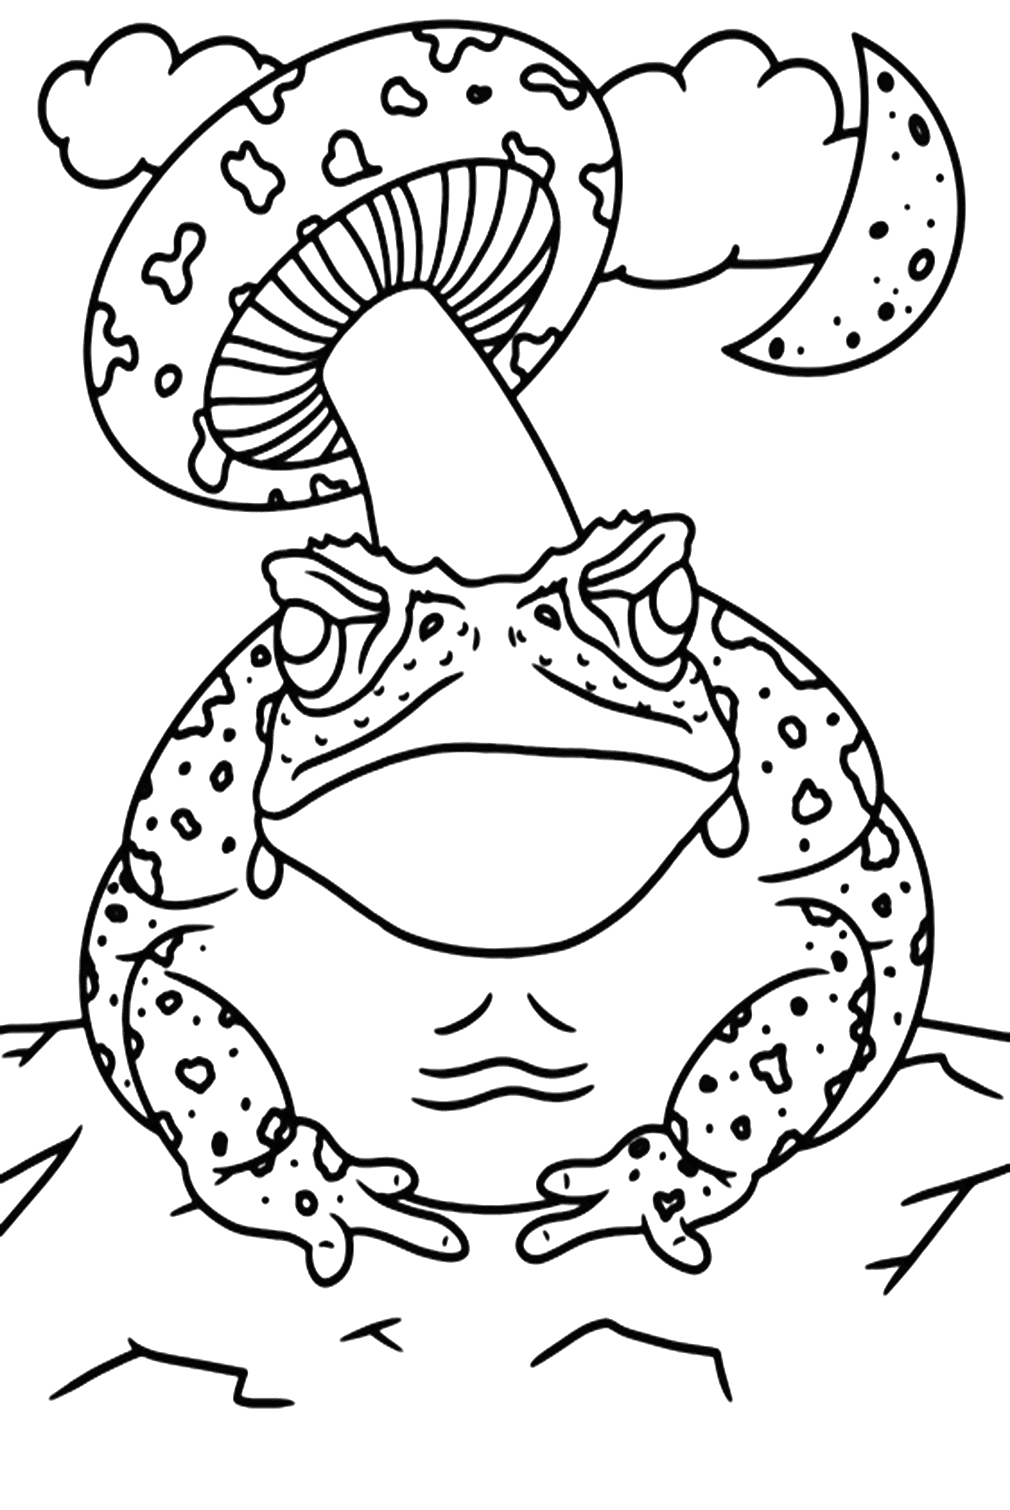 Cane Toad Malvorlage von Cane Toad